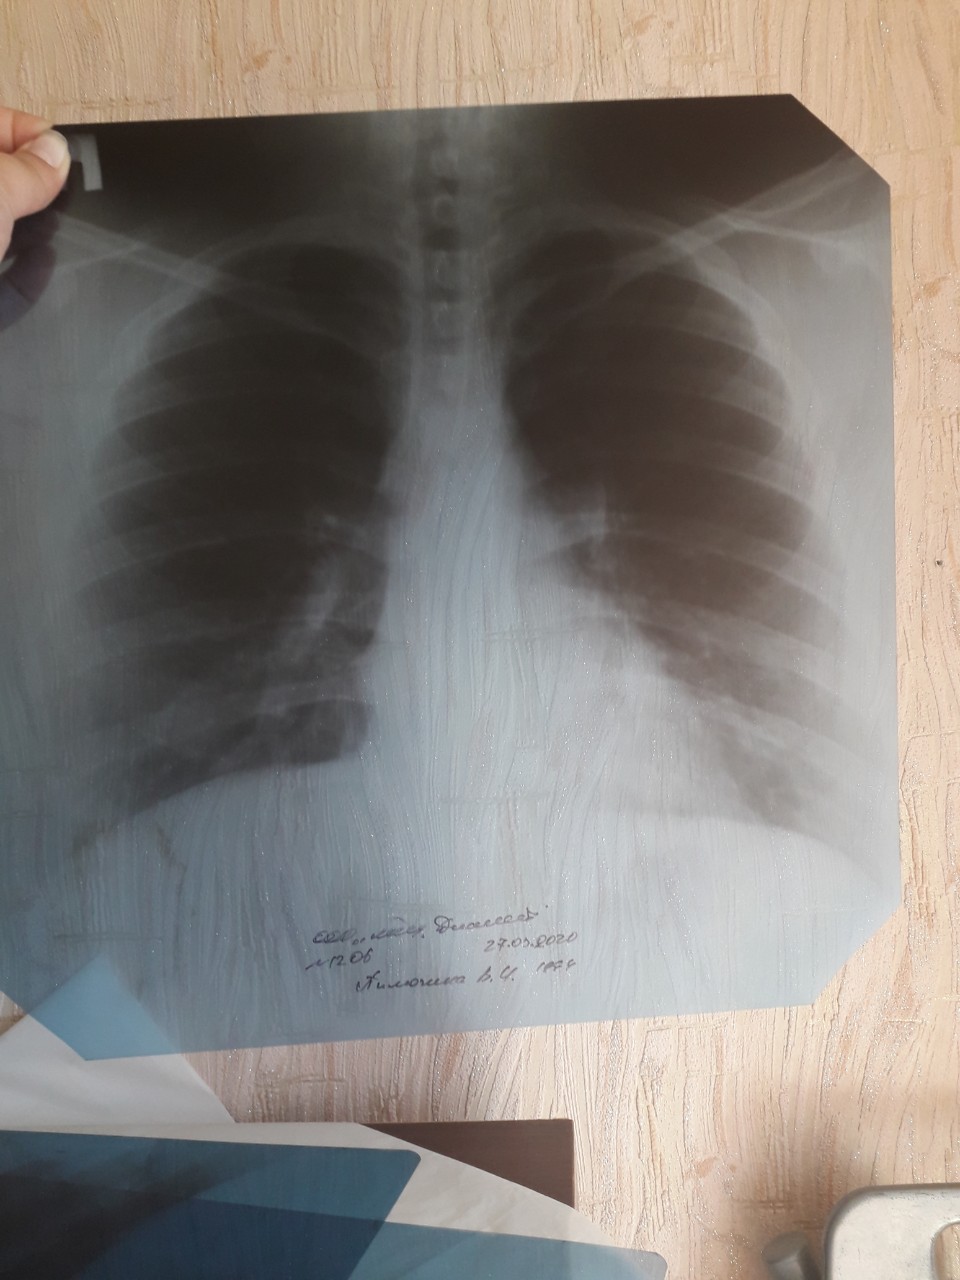 Рентген легких без патологий